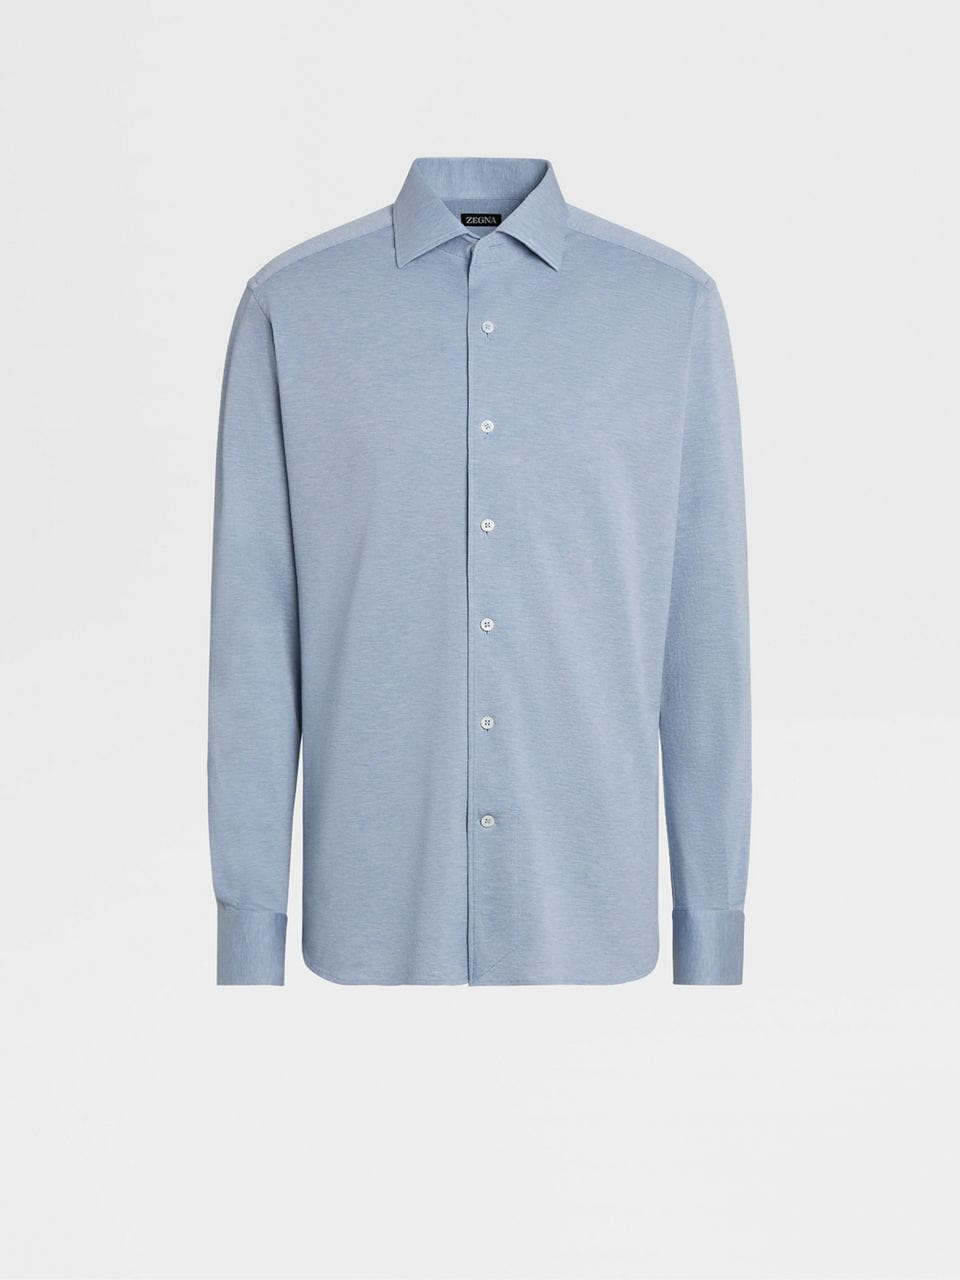 Zegna cotton jersey shirt - Blue